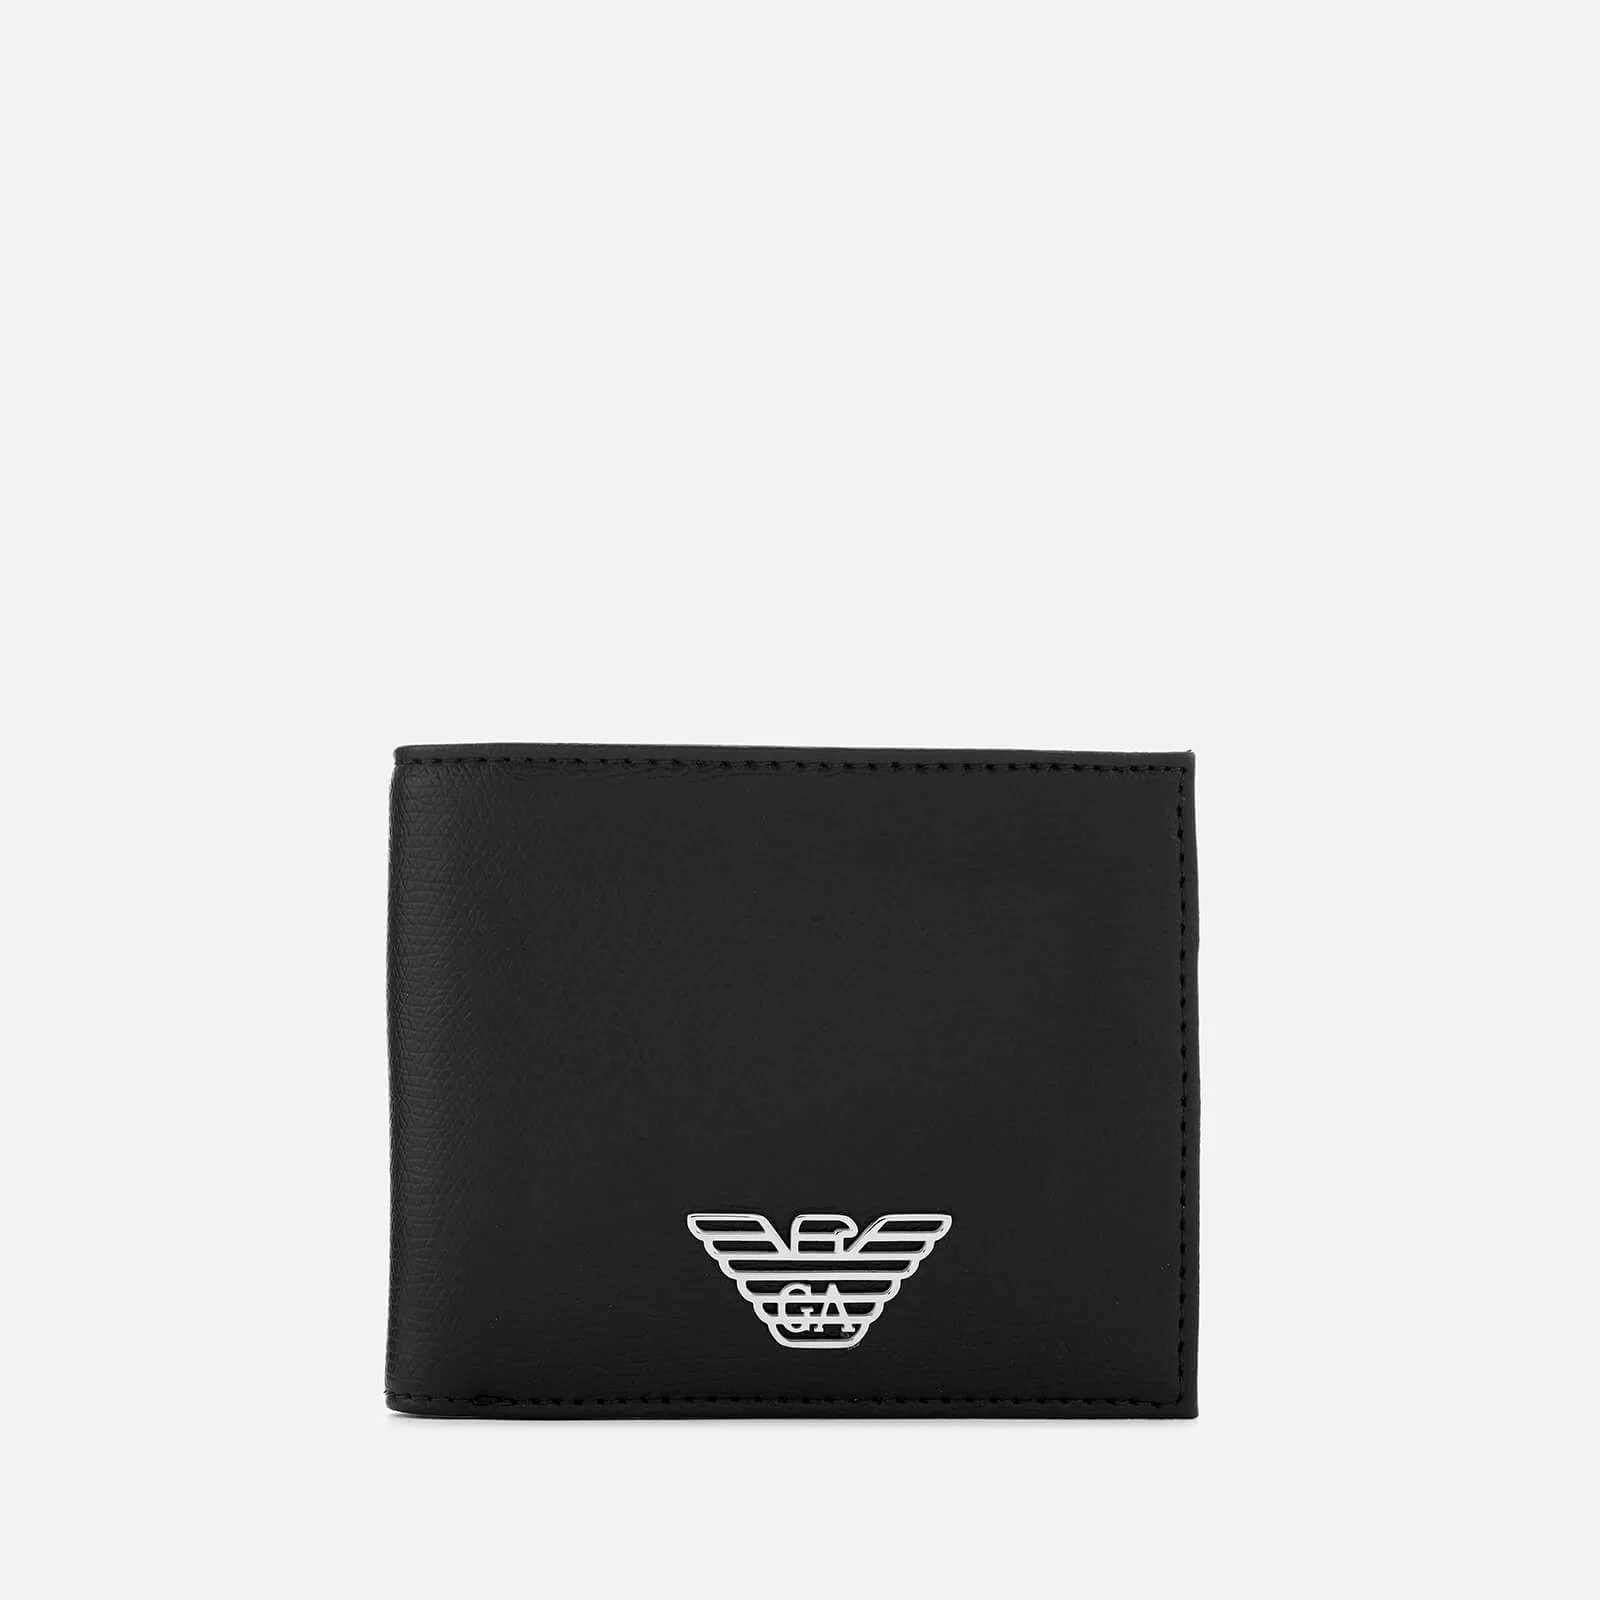 Emporio Armani Men's Wallet - Black Image 1